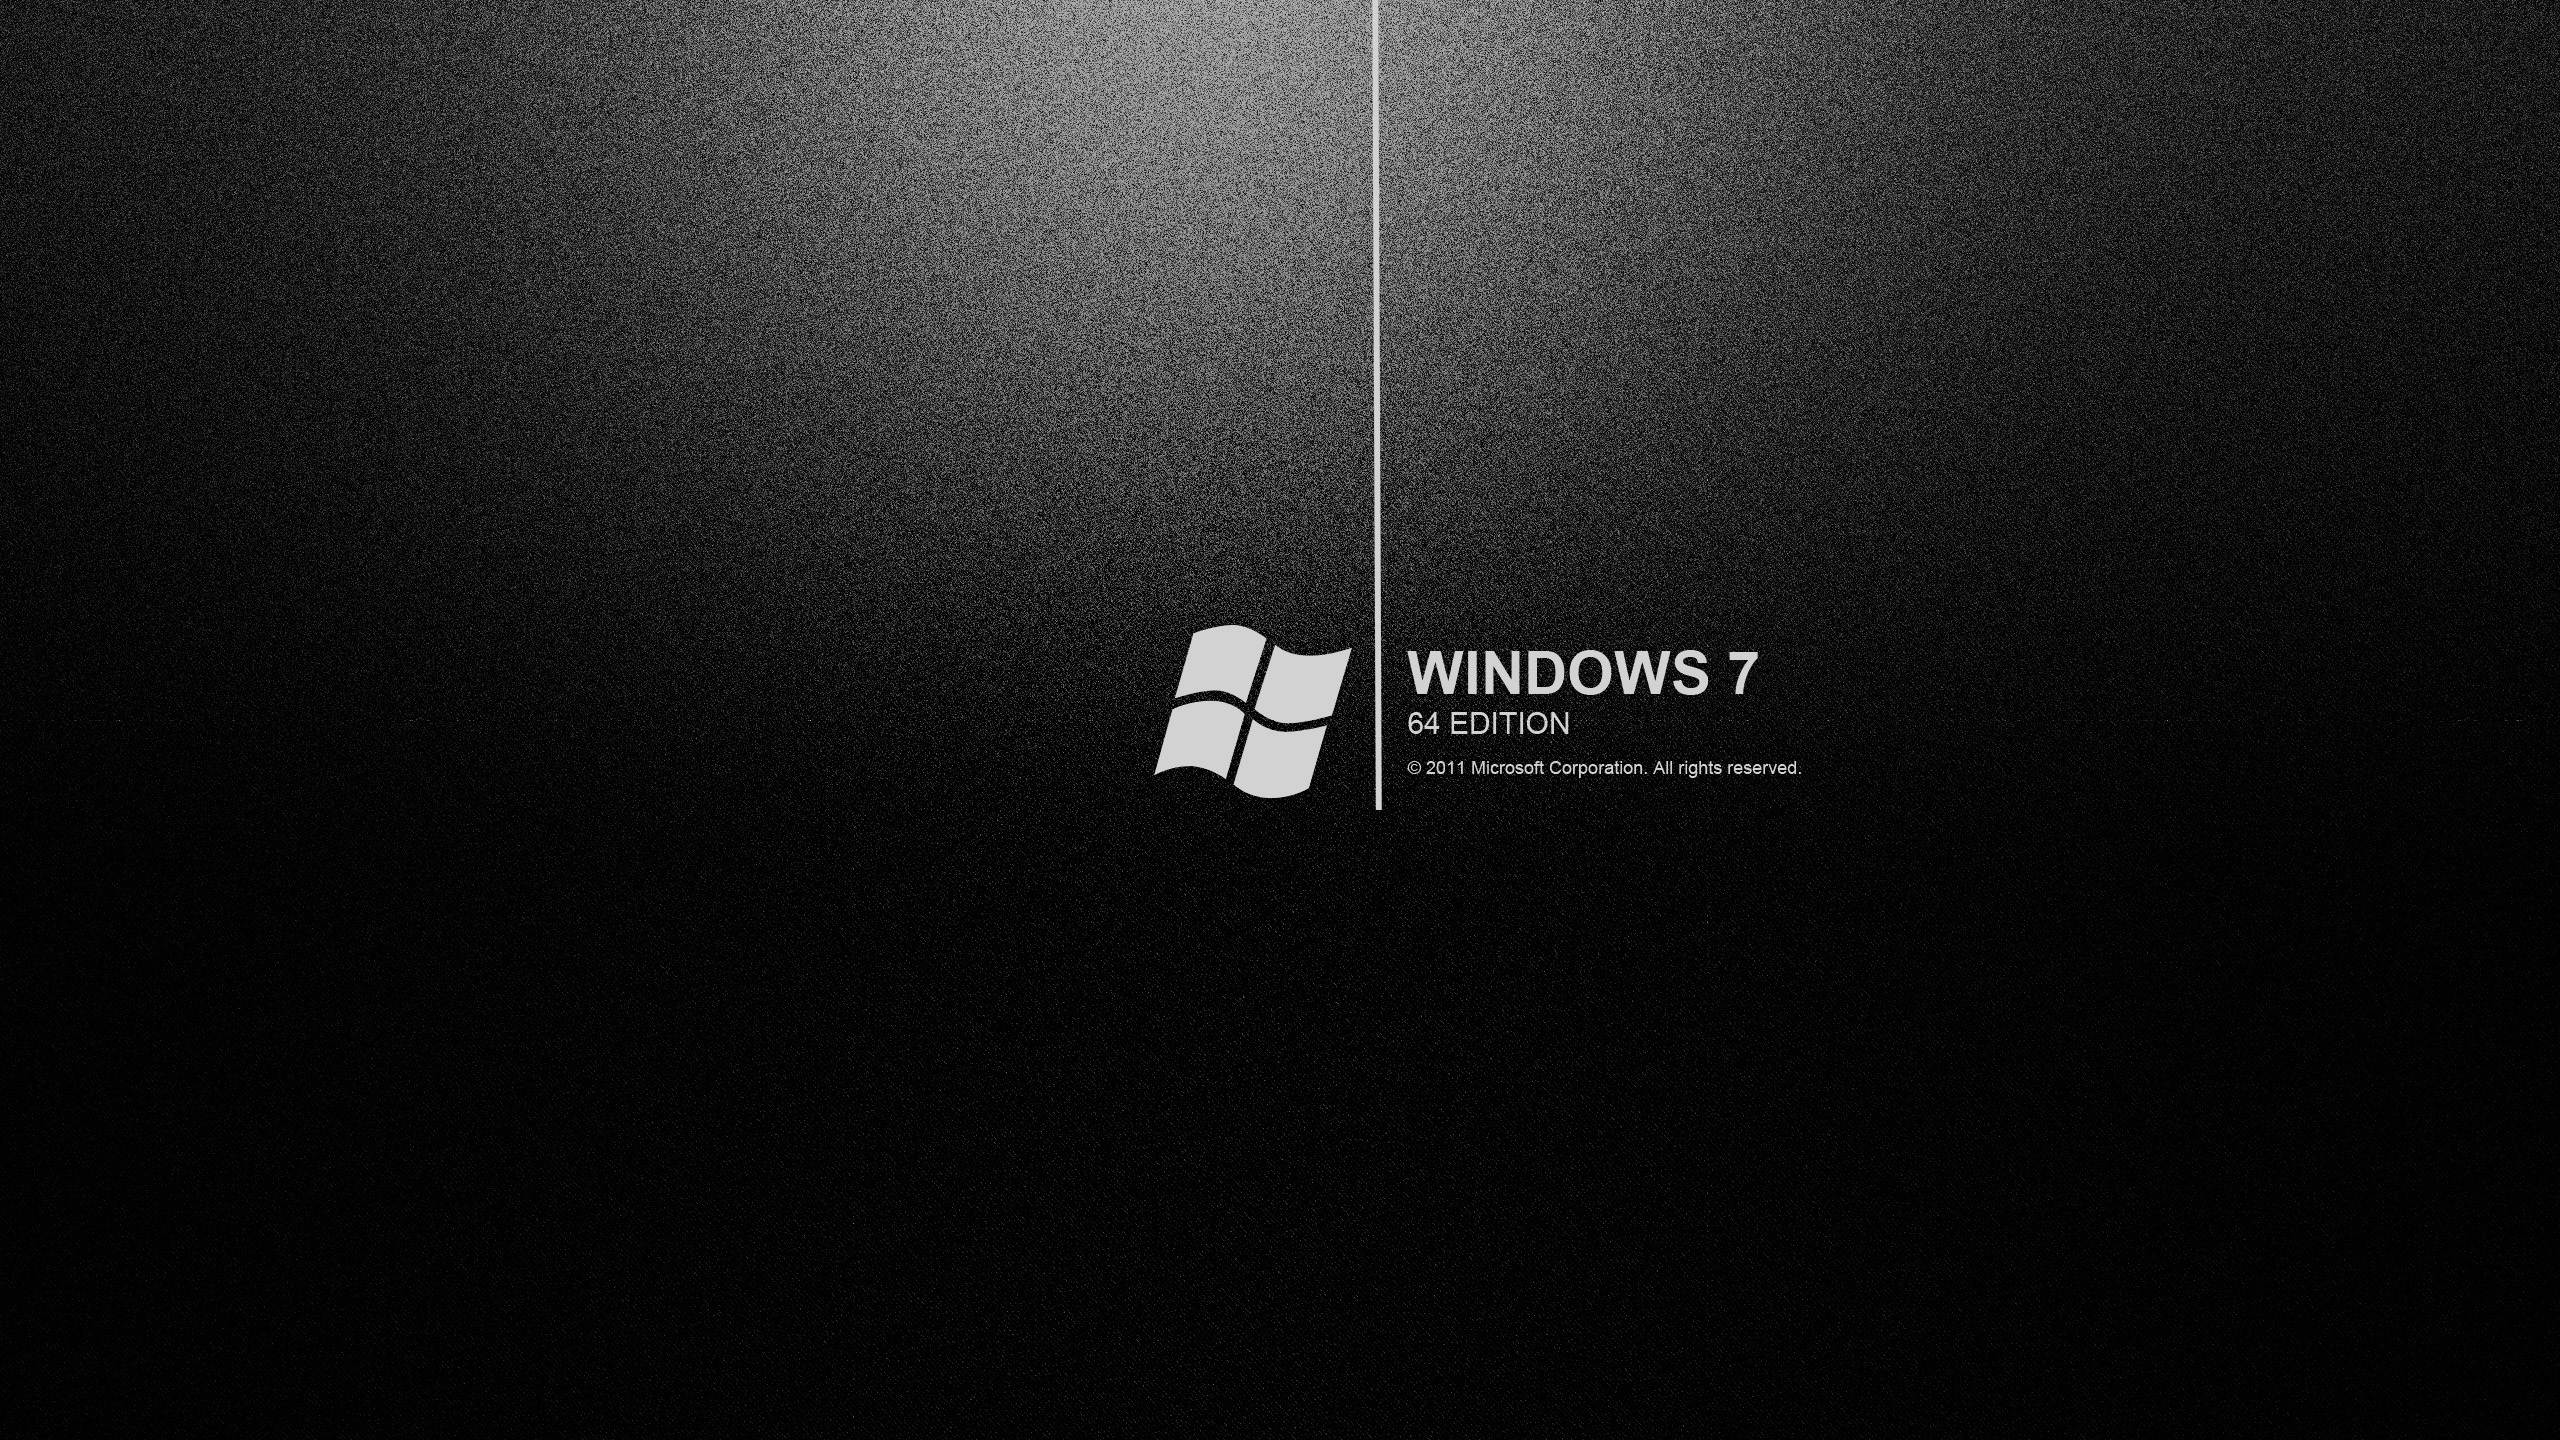 Windows 7 là hệ điều hành được yêu thích nhất với giao diện đơn giản và dễ sử dụng. Nếu bạn là fan của Windows 7, hãy cập nhật màn hình Desktop của mình với hình nền này để trải nghiệm sự mới mẻ và tươi trẻ.